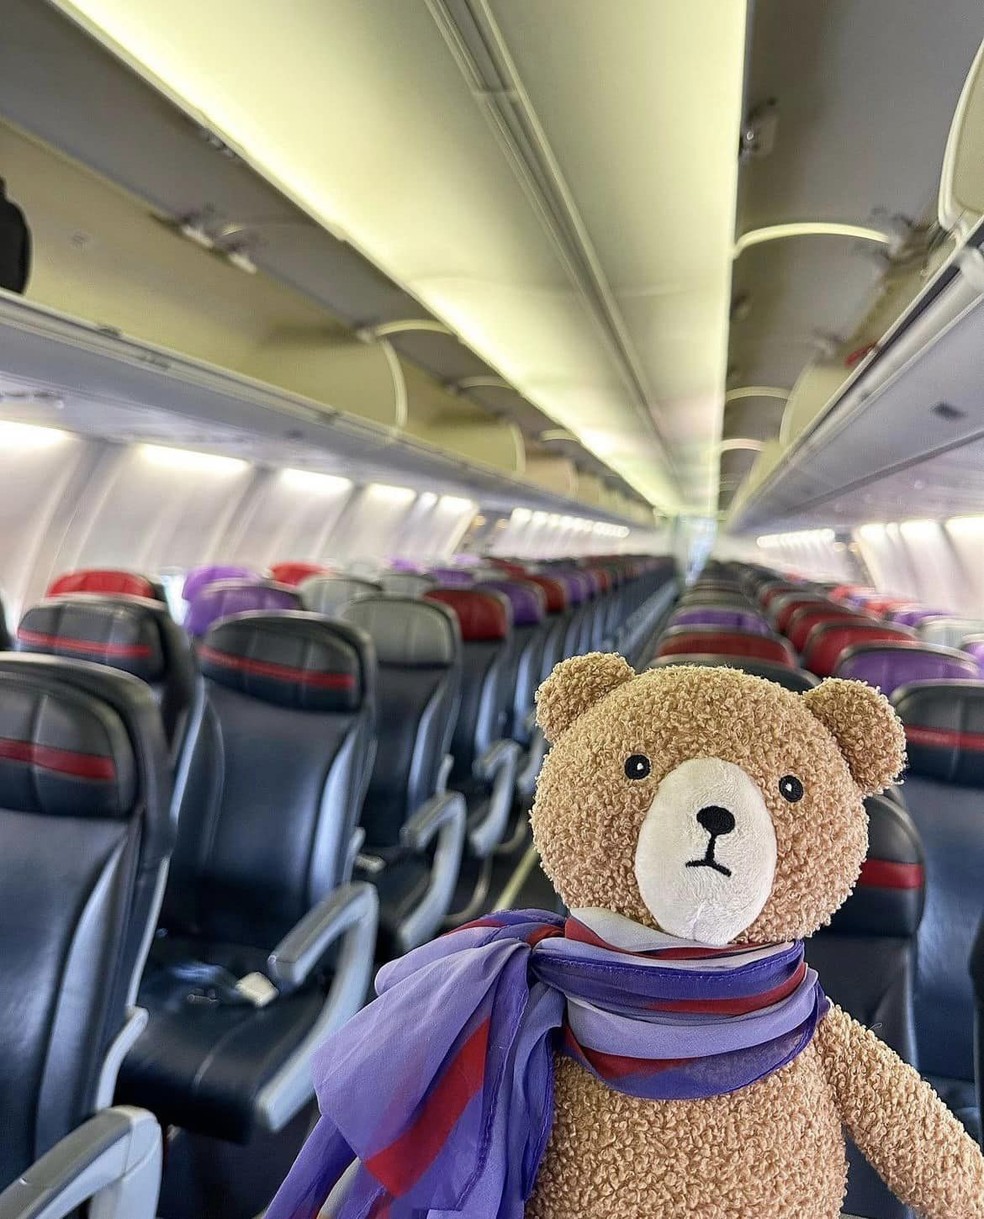 Funcionários da Virgin Australia fizeram uma campanha para encontrar o dono do ursinho esquecido no voo — Foto: Reprodução/Facebook